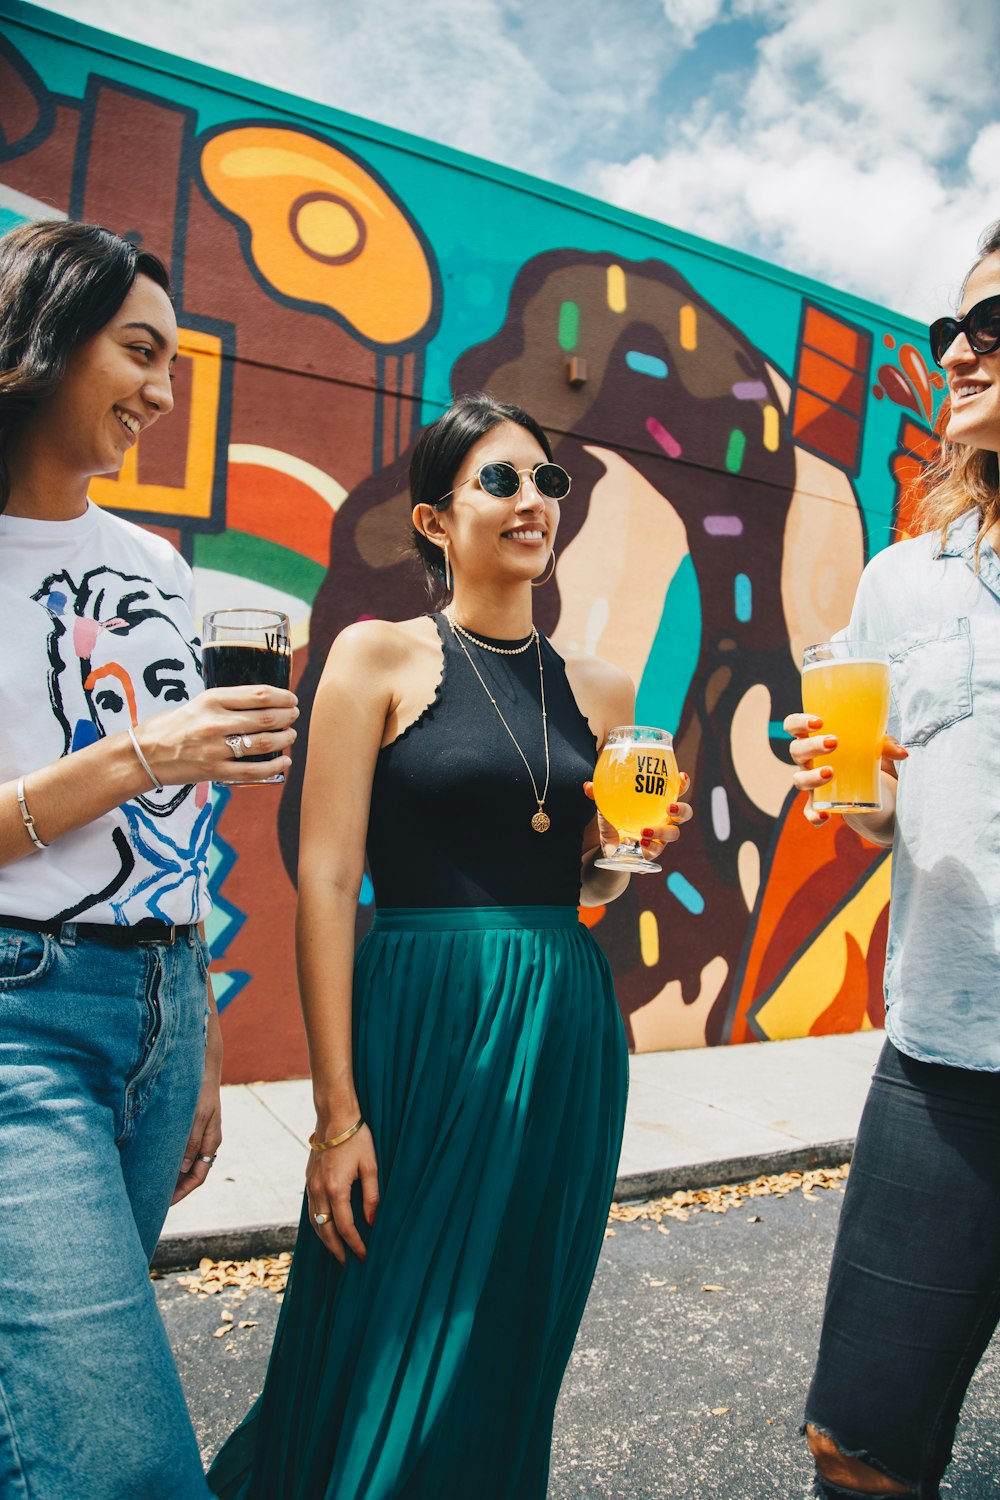 Drei Frauen trinken etwas vor Wandgraffiti